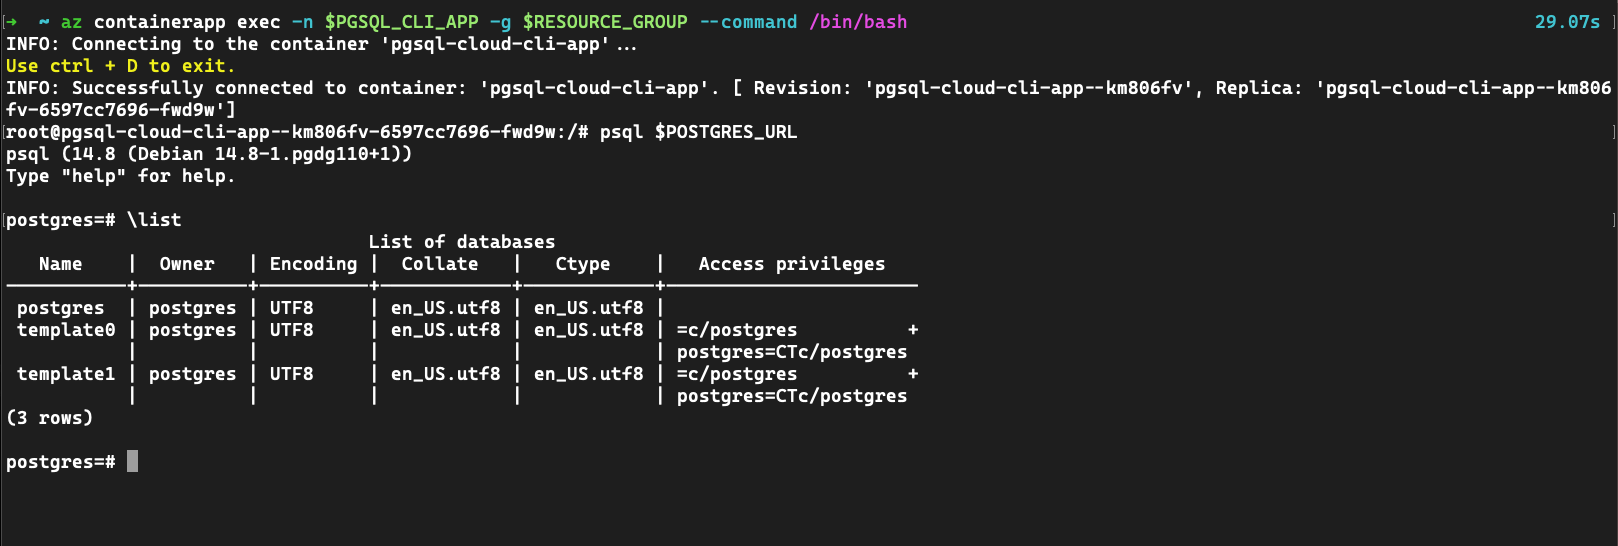 Captura de ecrã da aplicação de contentor com pgsql para ligar a um serviço PostgreSQL.